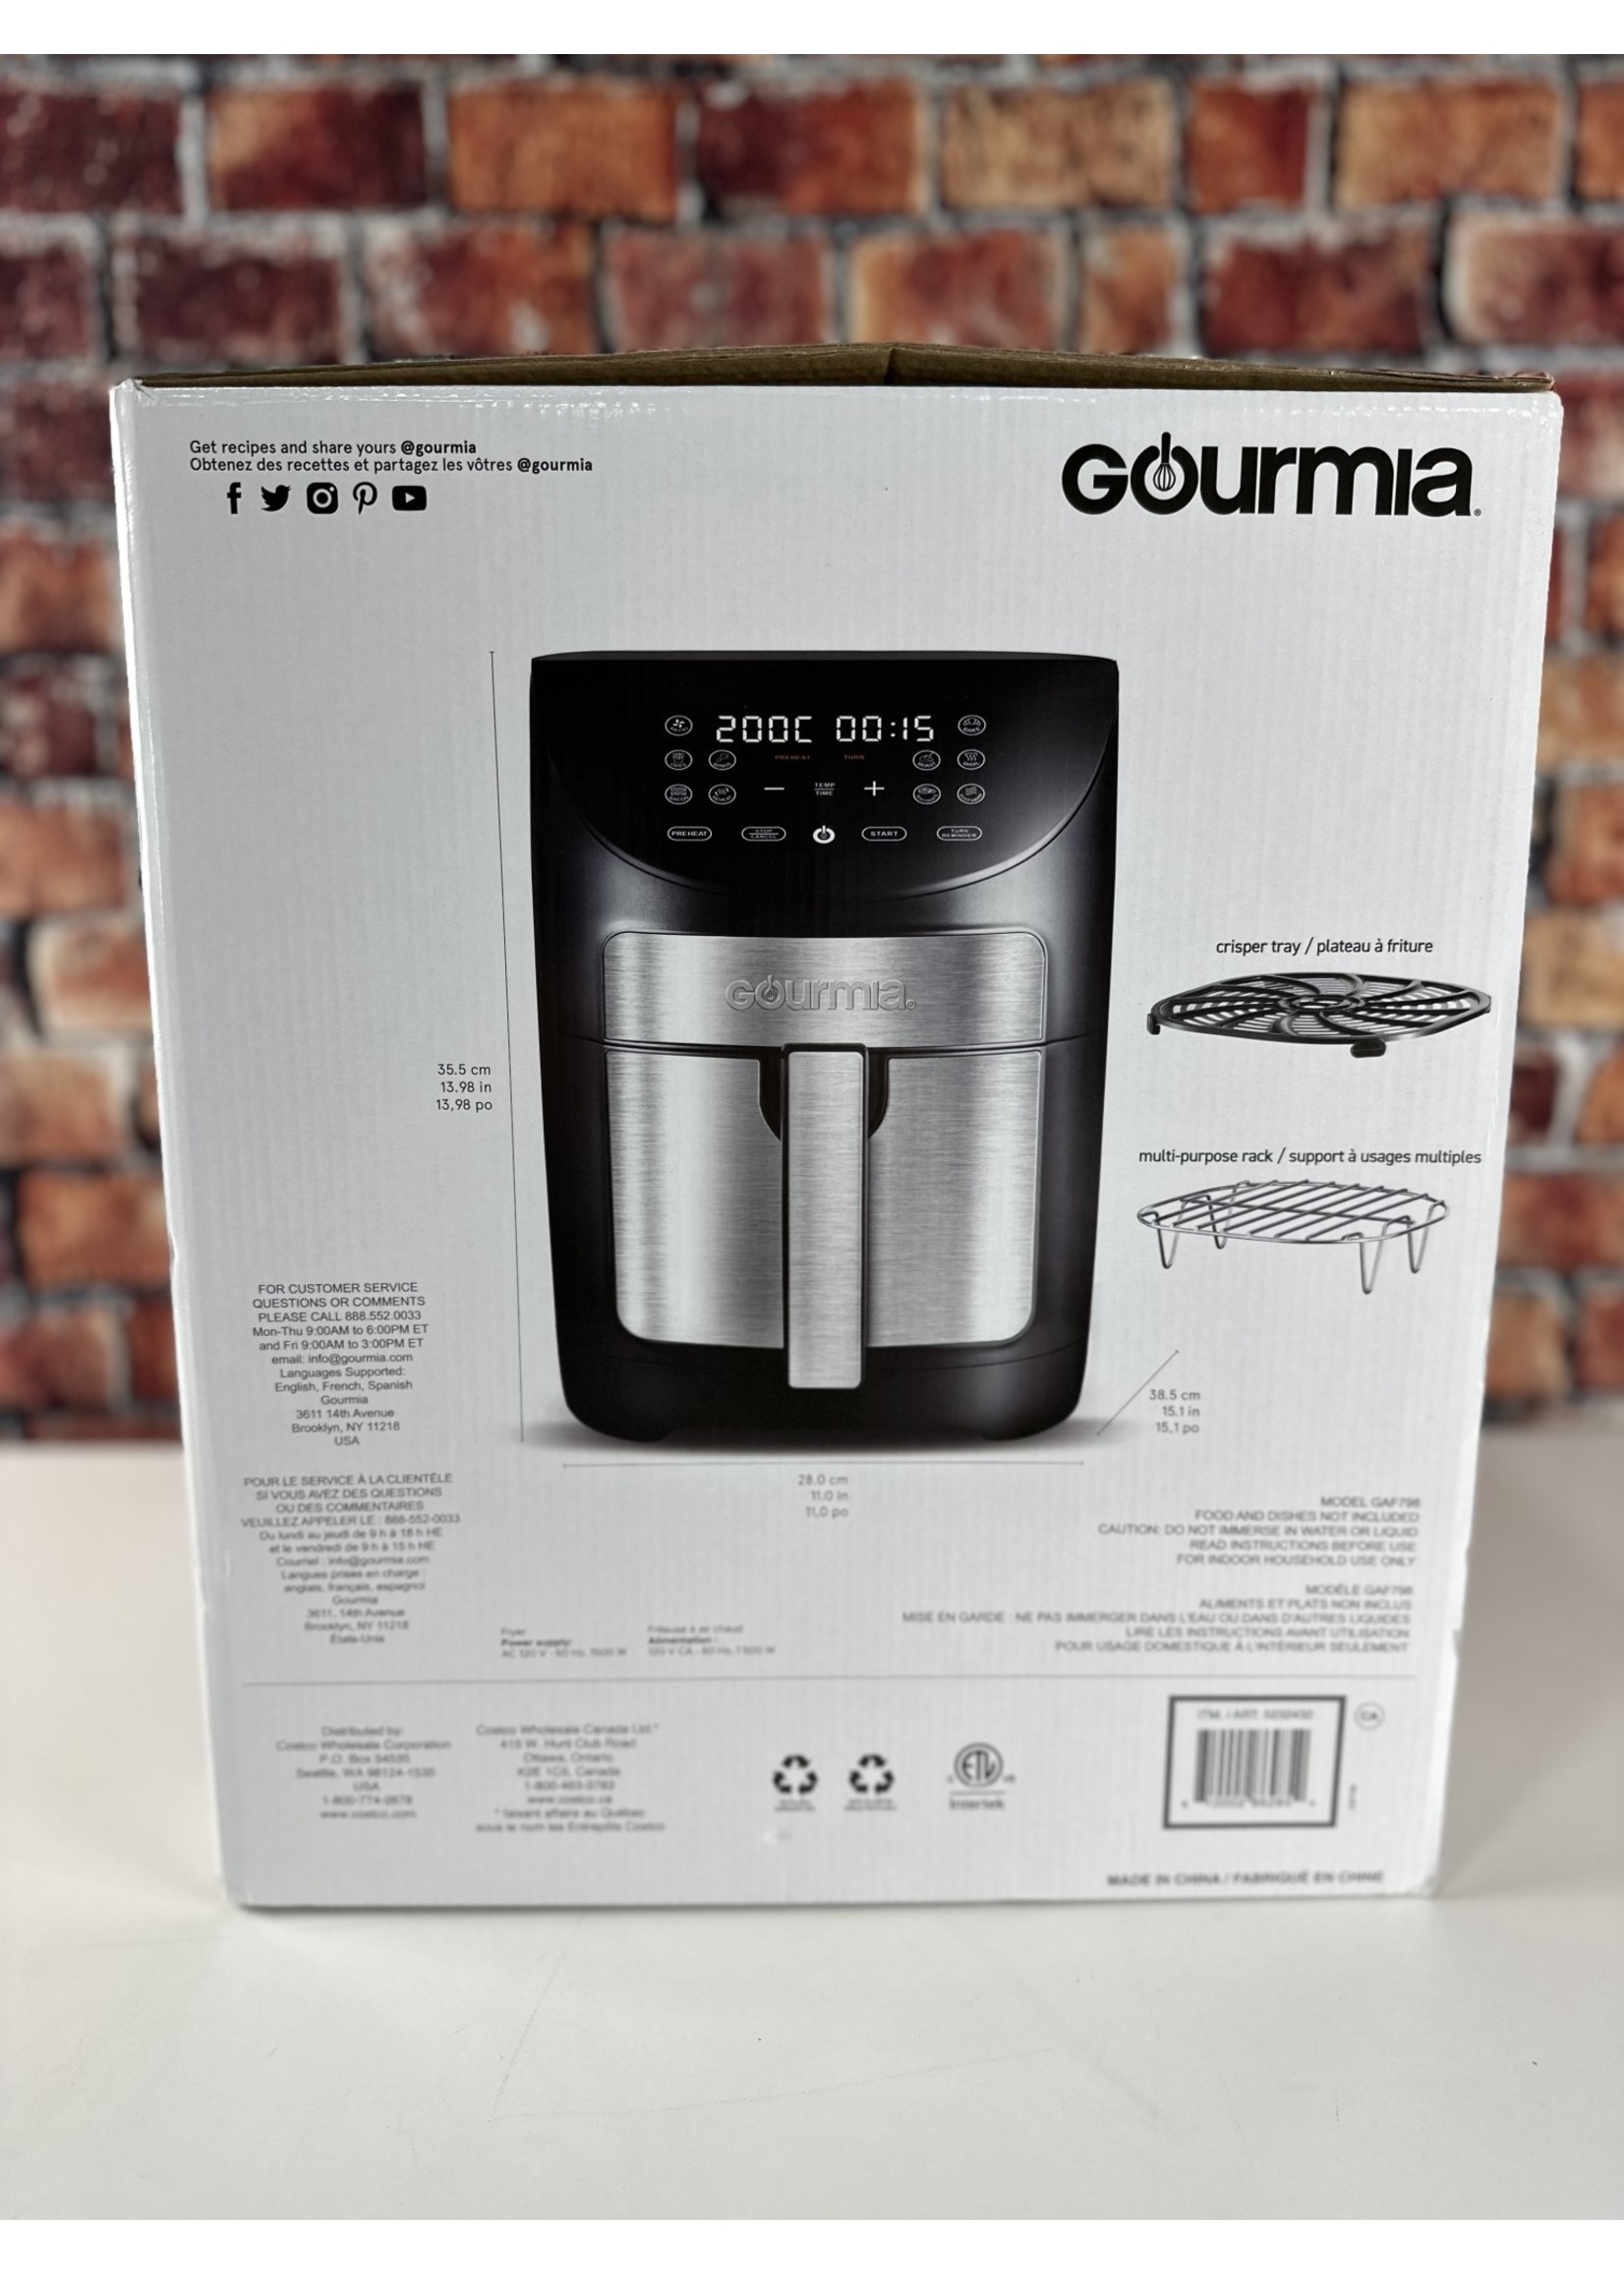 GOURMIA GOURMIA 7 QUART AIR FRYER - GAF798 - National Appliance